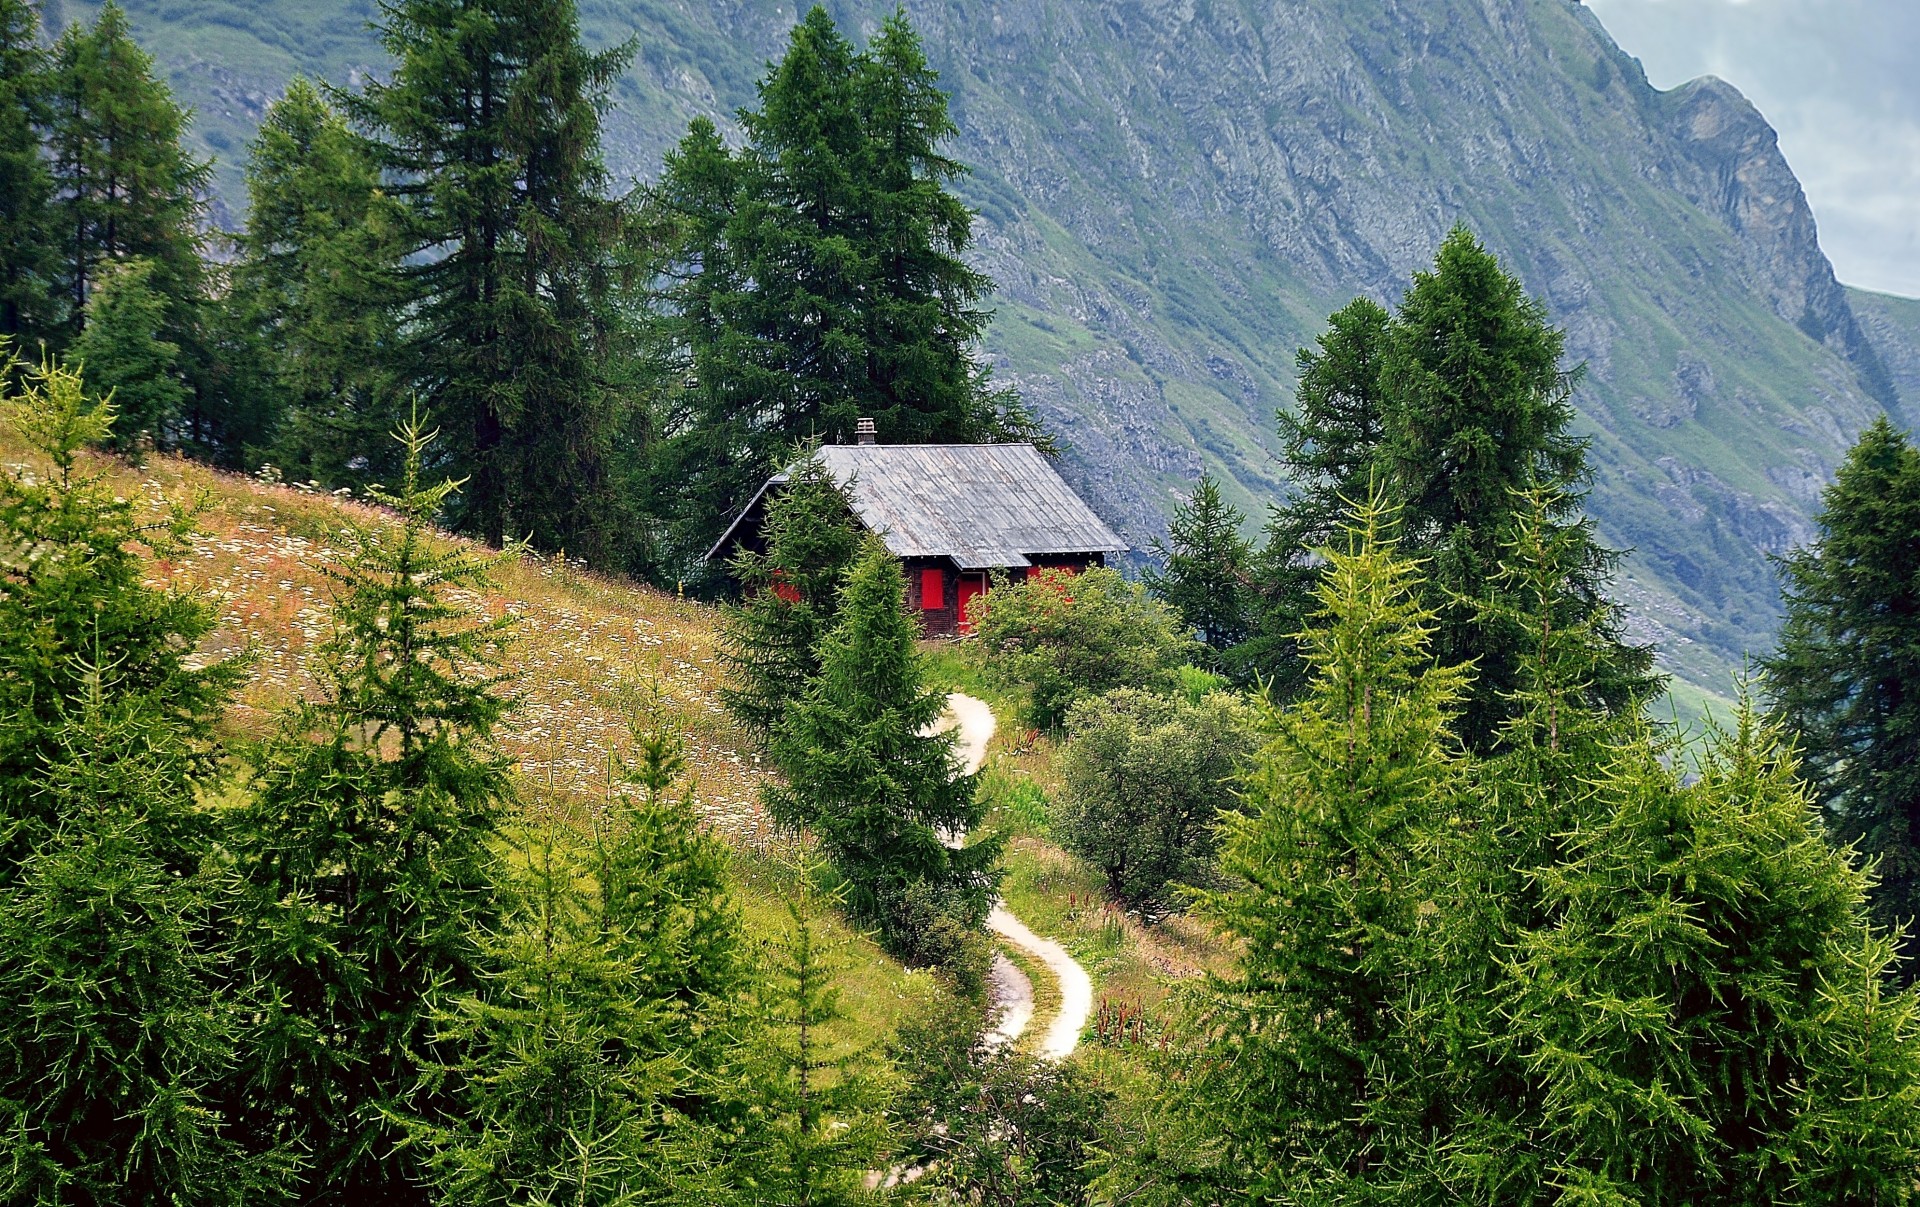 Обои дом в горах